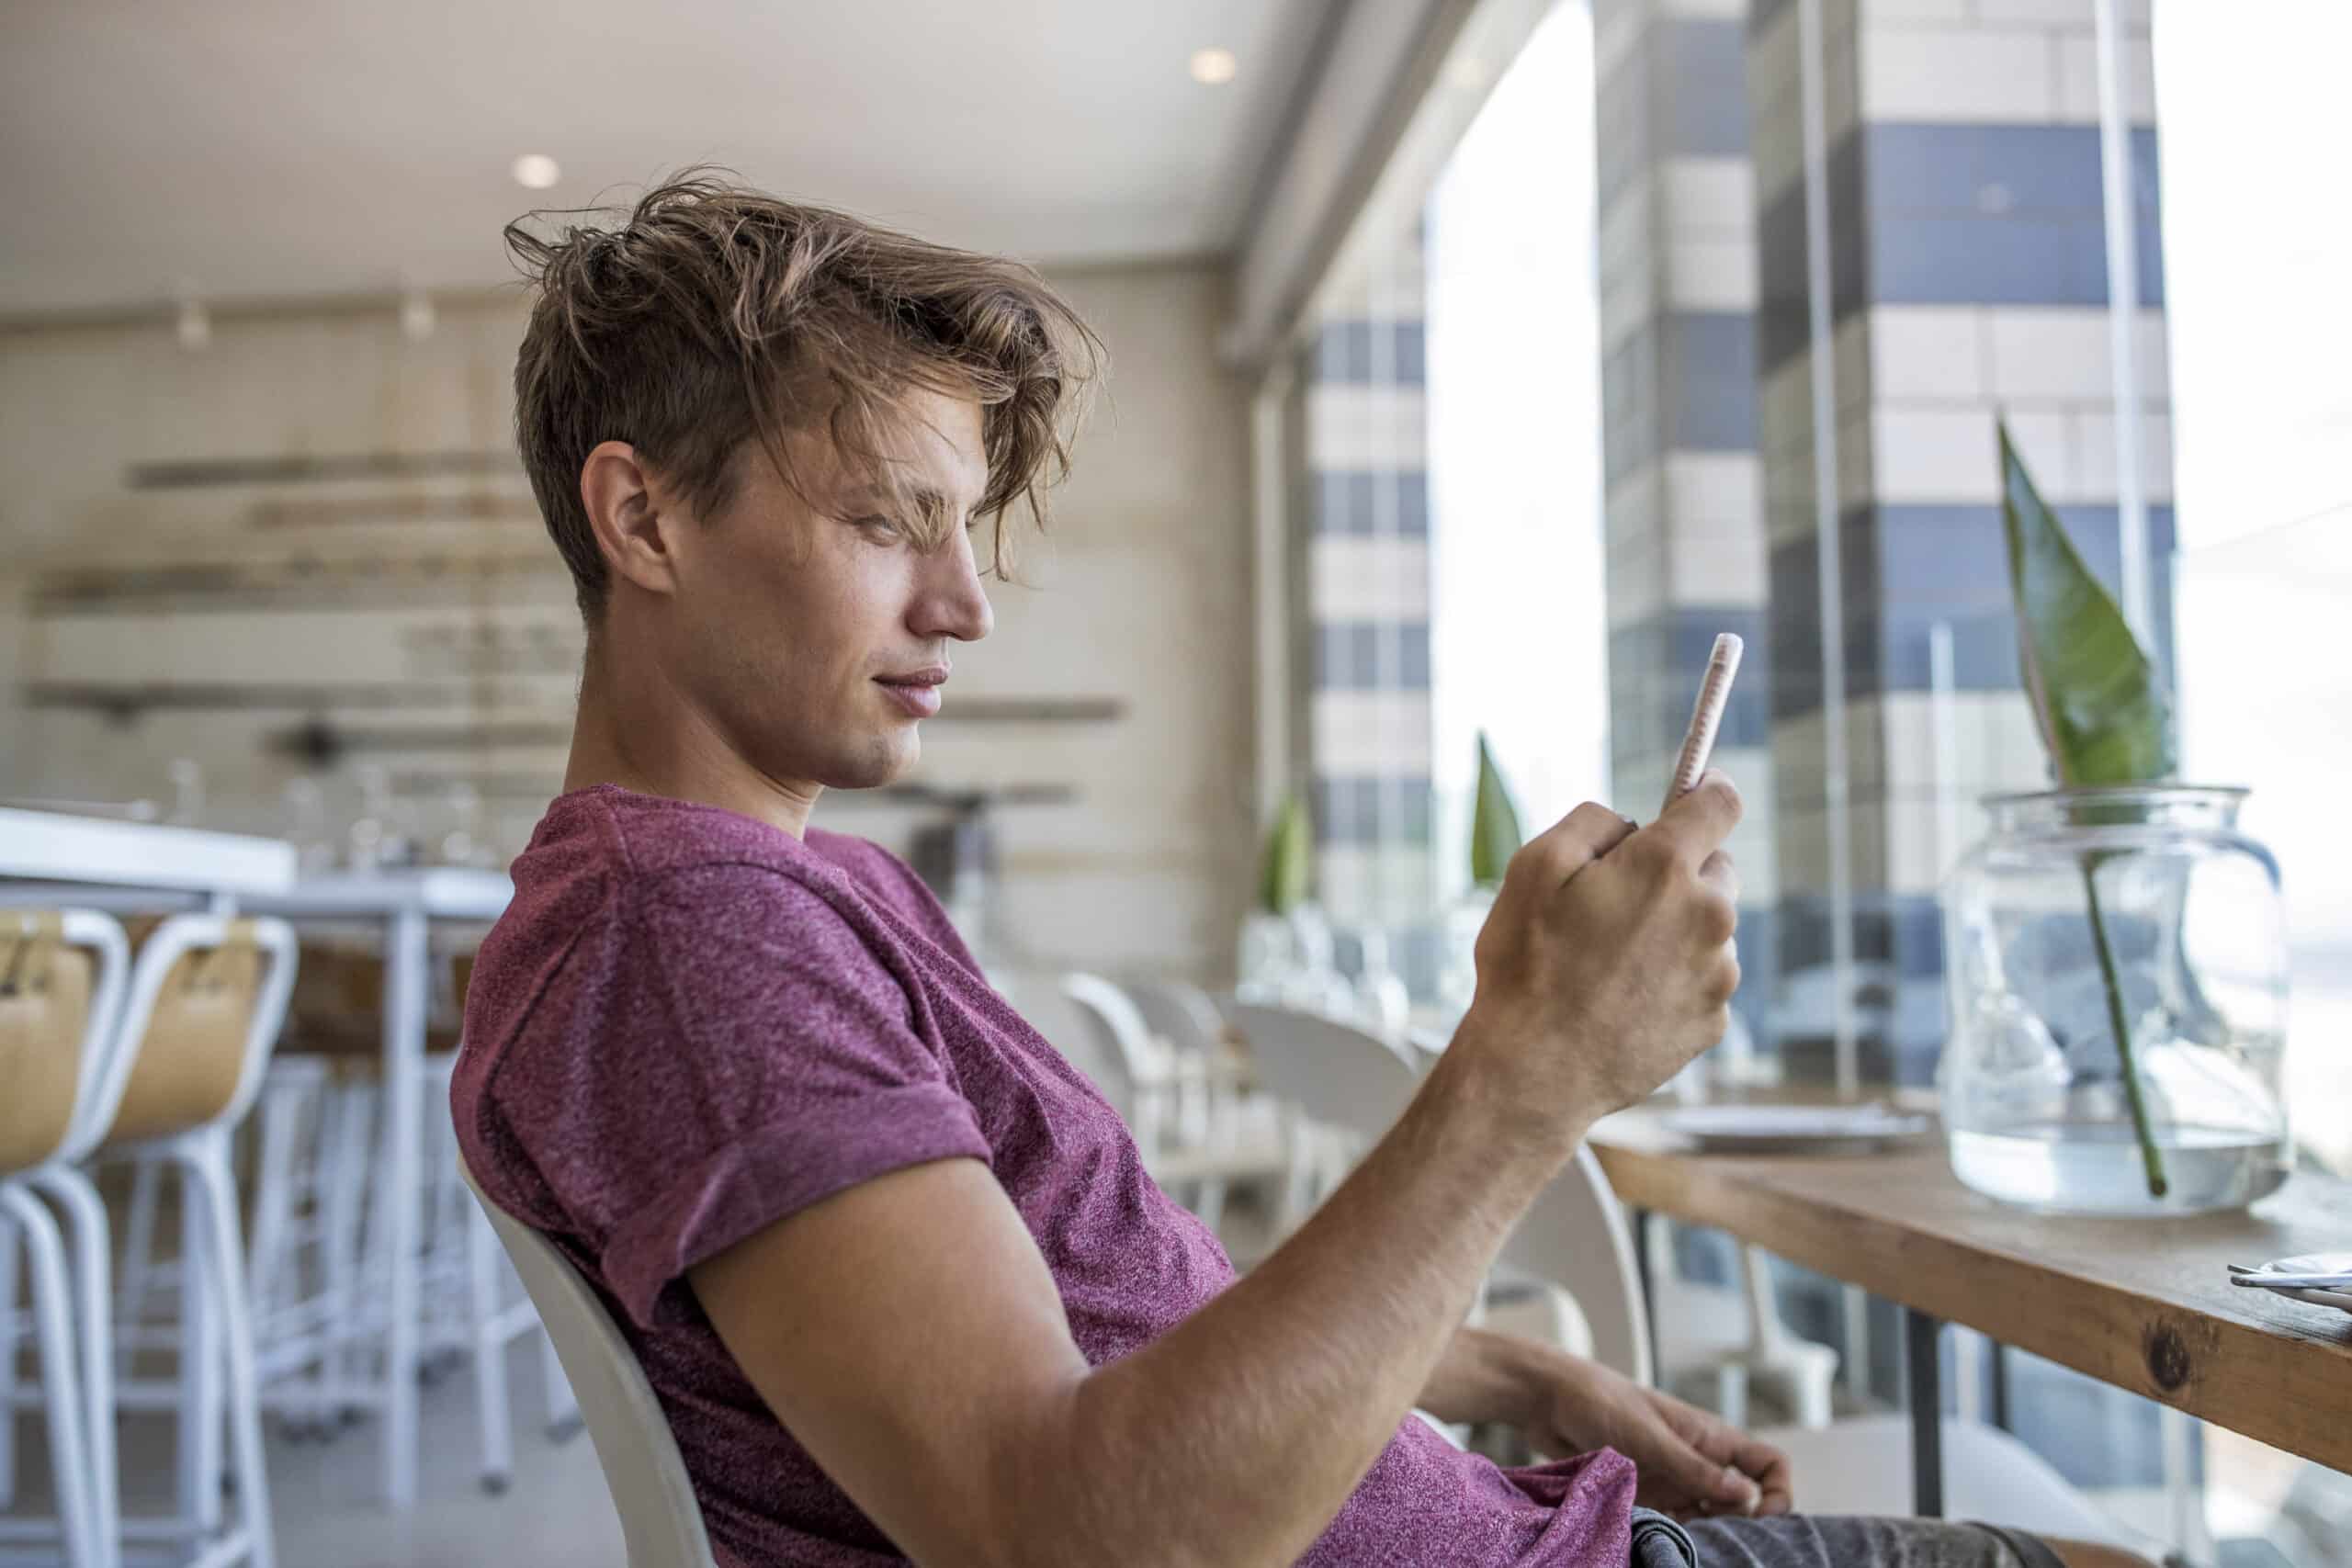 Ein junger Mann in einem lässigen T-Shirt sitzt an einem Cafétisch und konzentriert sich auf sein Smartphone. Das moderne Interieur und die großen Fenster suggerieren eine helle, gesellige Atmosphäre. © Fotografie Tomas Rodriguez